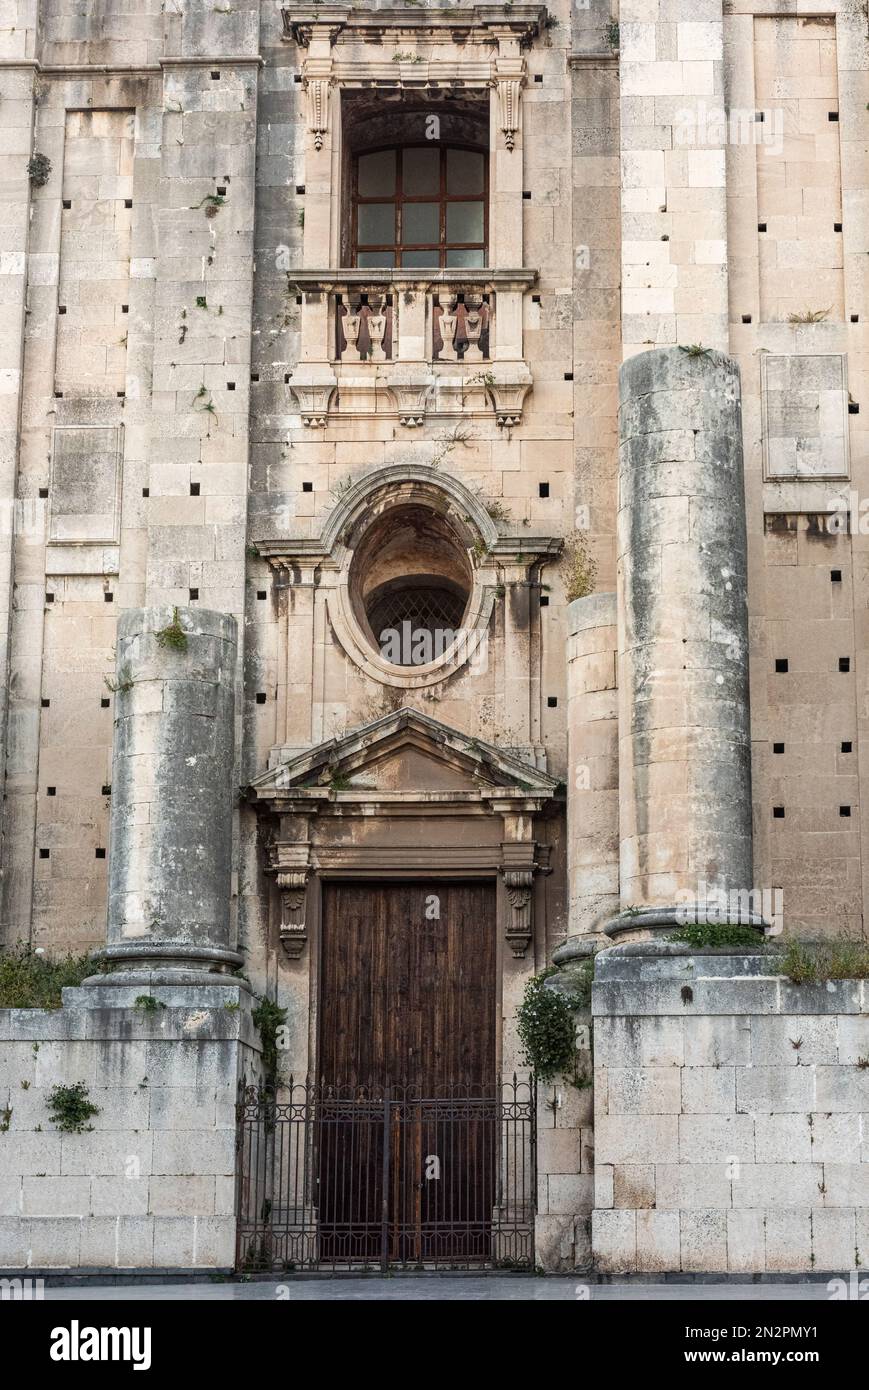 L'entrée principale dans la façade inachevée de l'immense église bénédictine de San Nicolò l'Arena (commencée en 1687), Catane, Sicile, Italie Banque D'Images